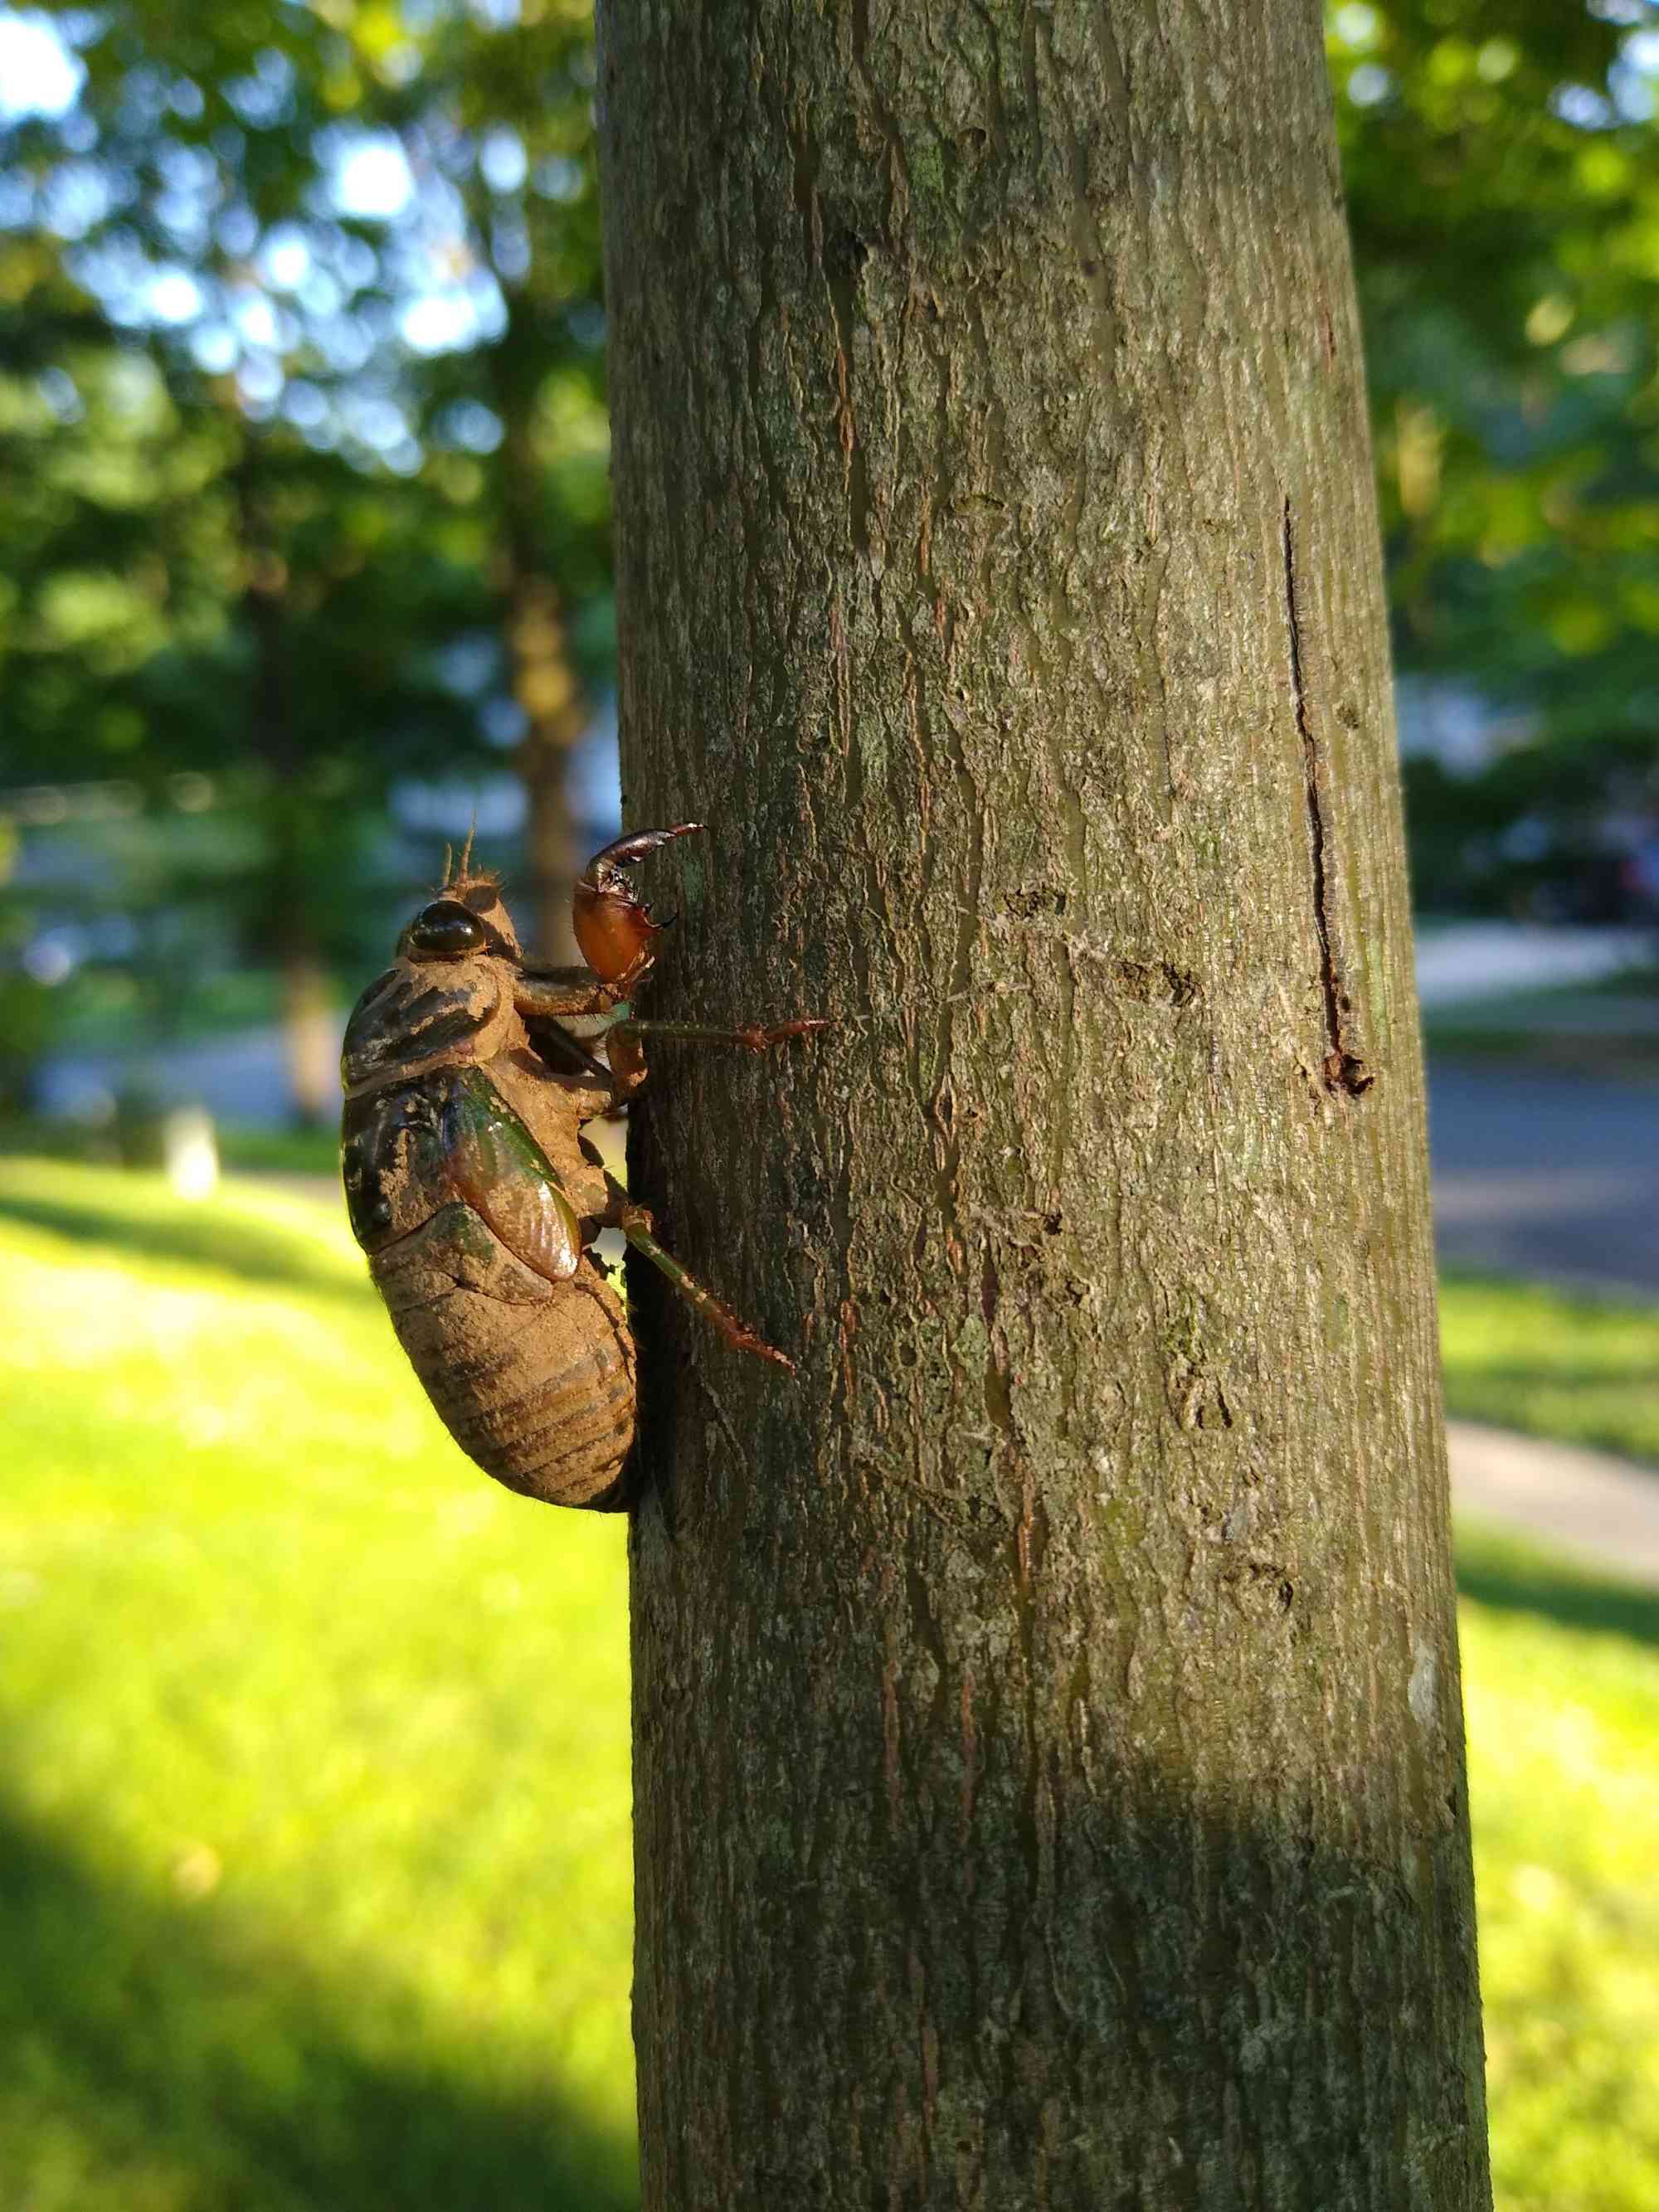 cicada on tree